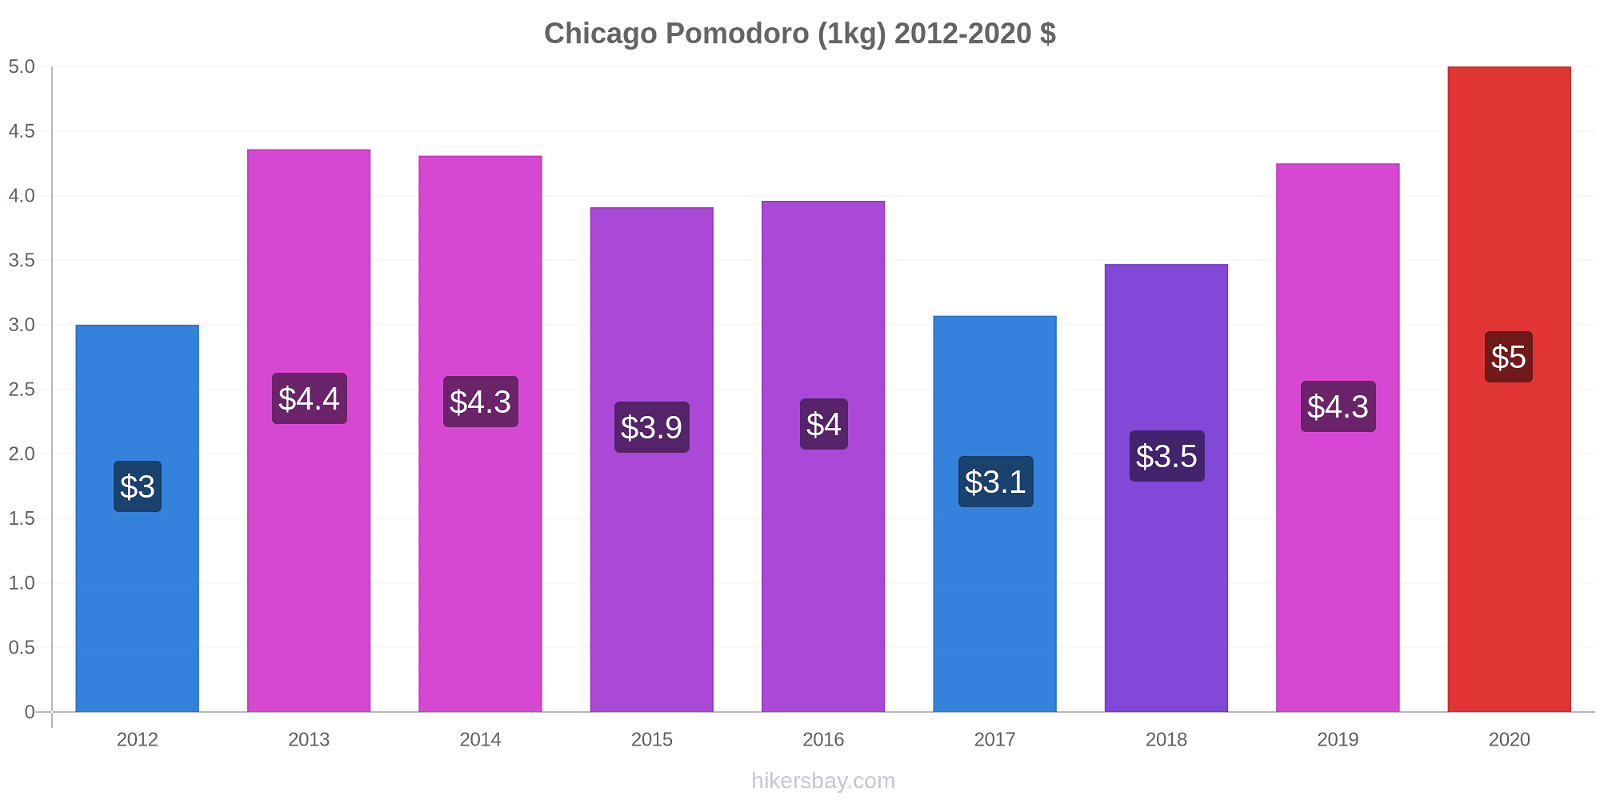 Chicago variazioni di prezzo Pomodoro (1kg) hikersbay.com